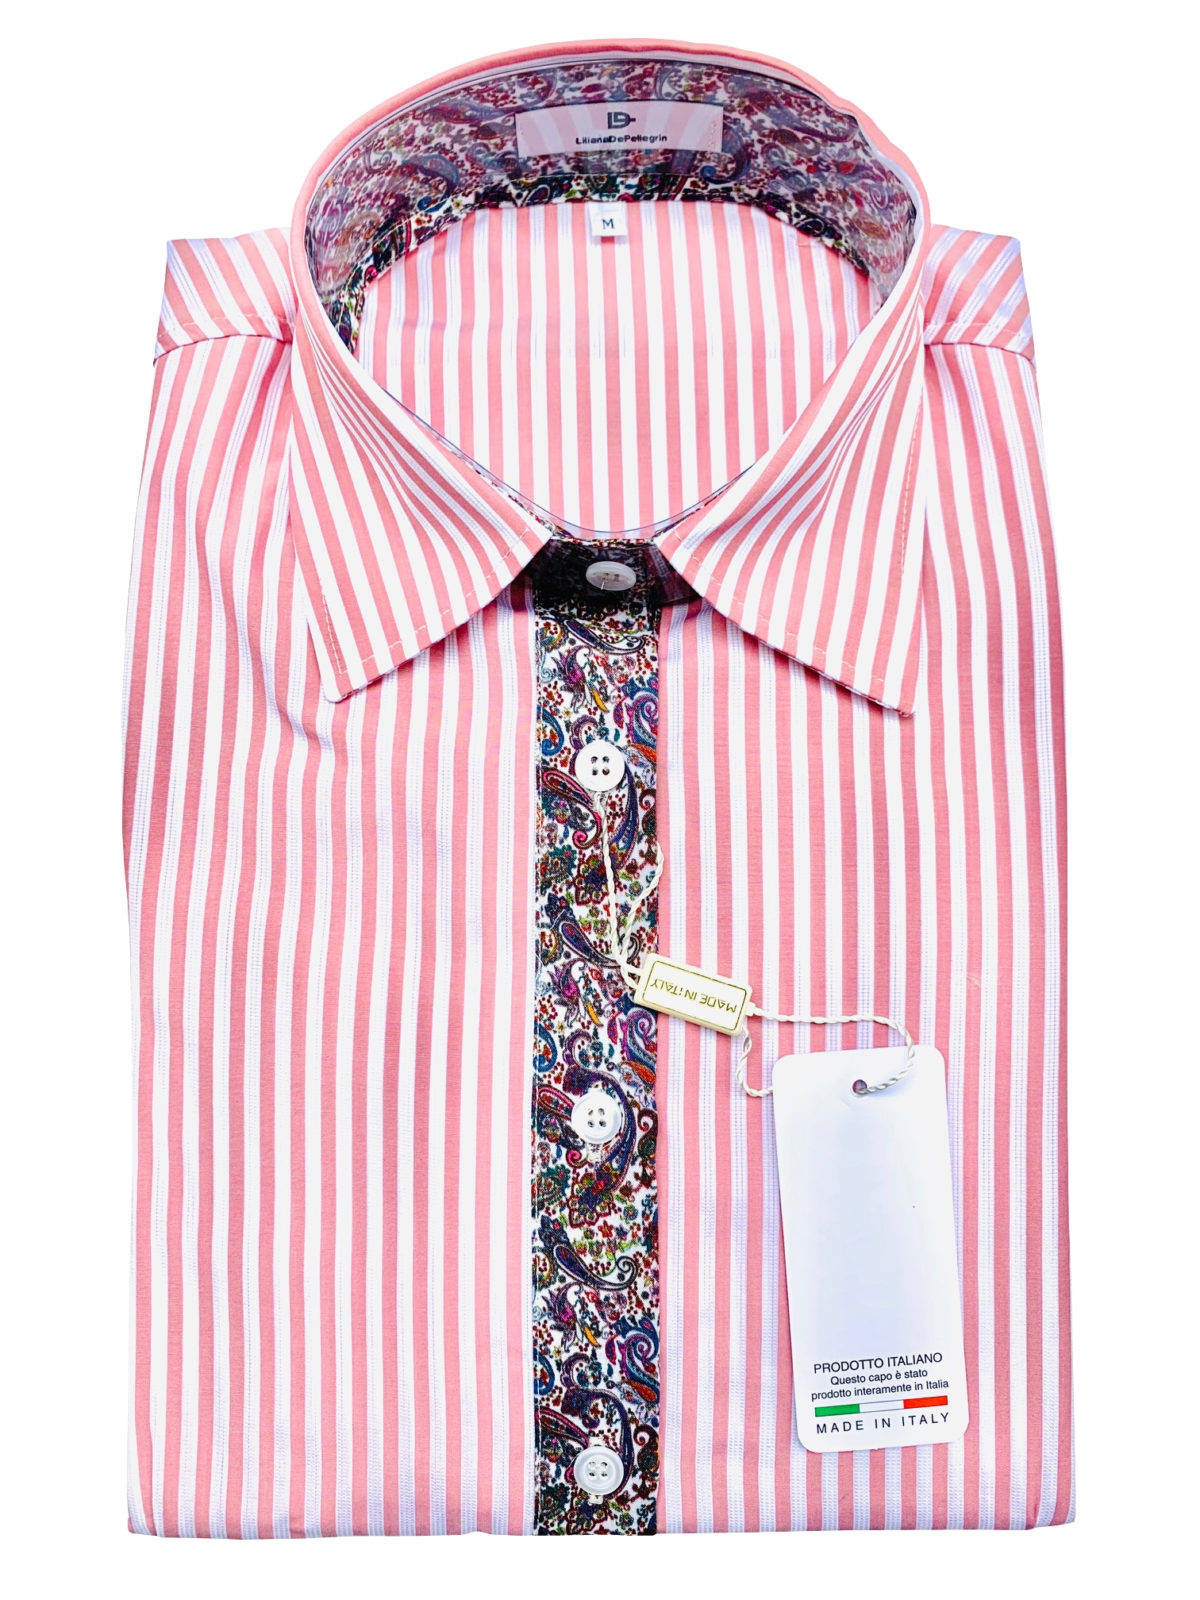 chemise rayure rose, cachemire, fantaisie, chic, élégant, coton